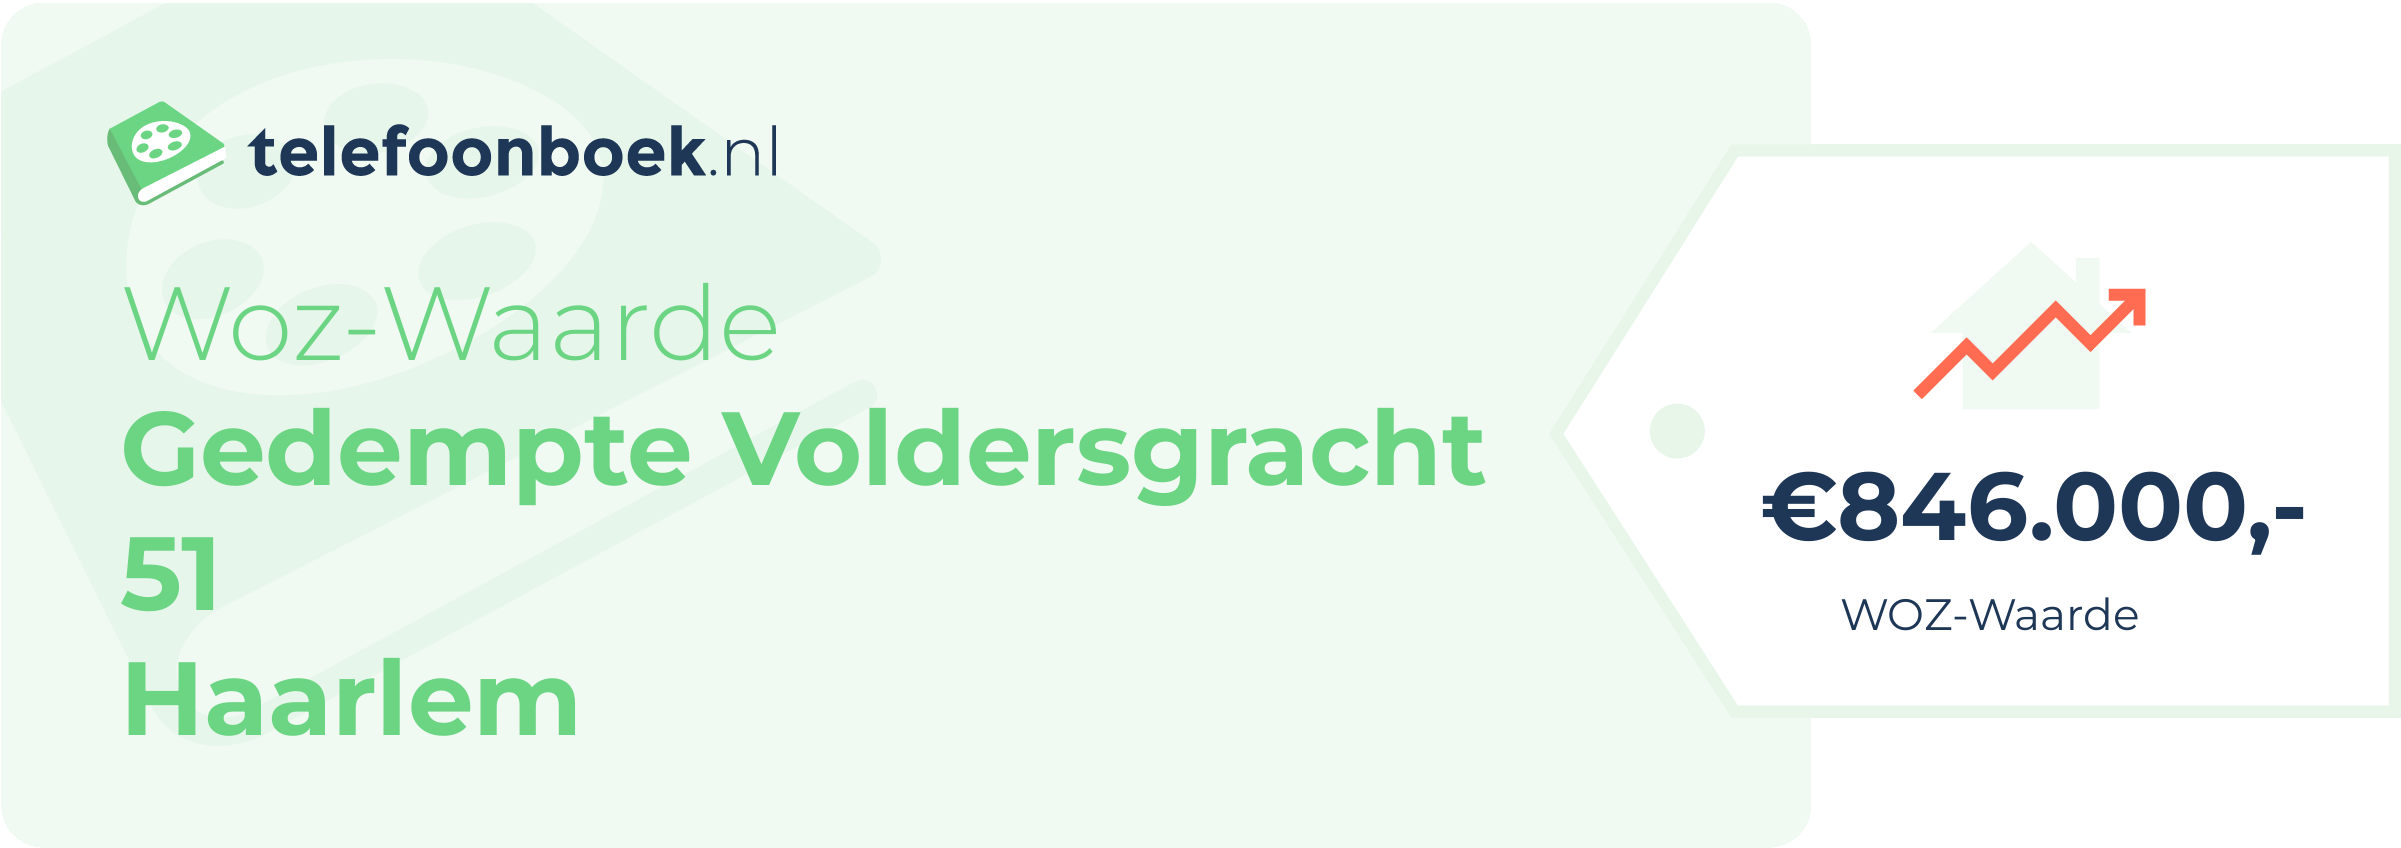 WOZ-waarde Gedempte Voldersgracht 51 Haarlem